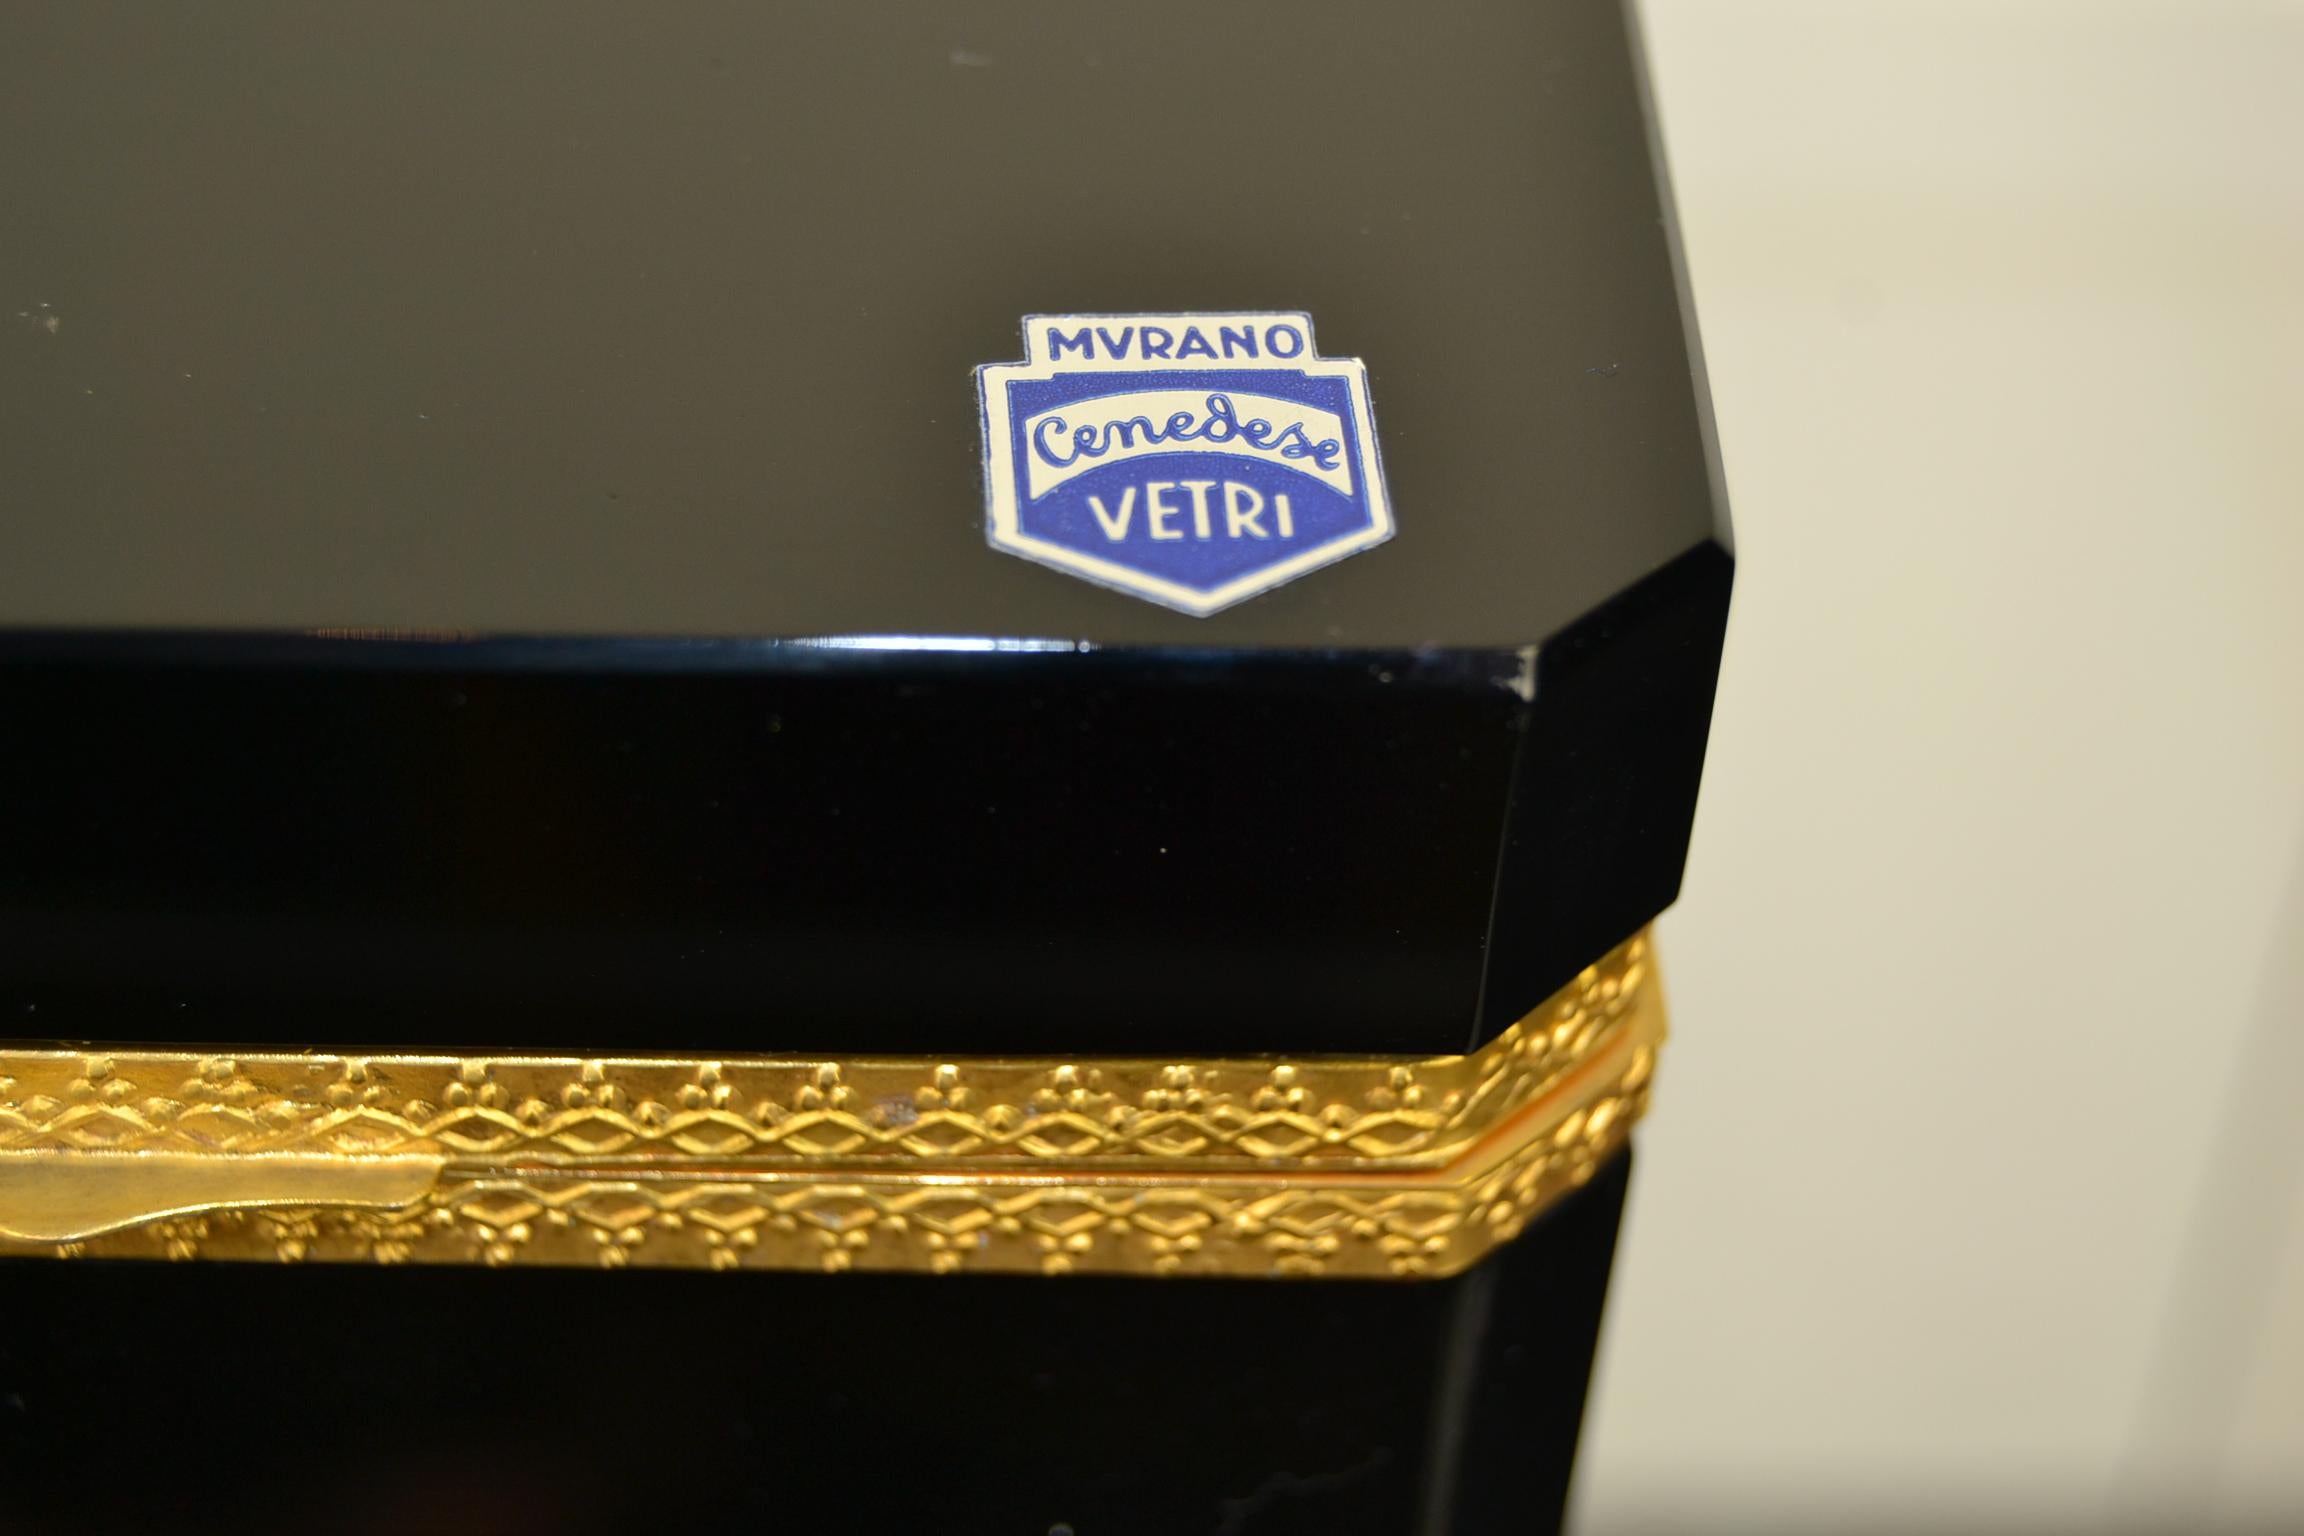 Schwarzes Murano-Schmuckkästchen von Giovanni Cenedese.
Das Etikett befindet sich noch auf dem Deckel: Murano Cenedese Vetri.
Es handelt sich um eine schwarze Dose aus Muranoglas mit vergoldeten Metalldetails, dekorativem Schloss und abgeschrägten